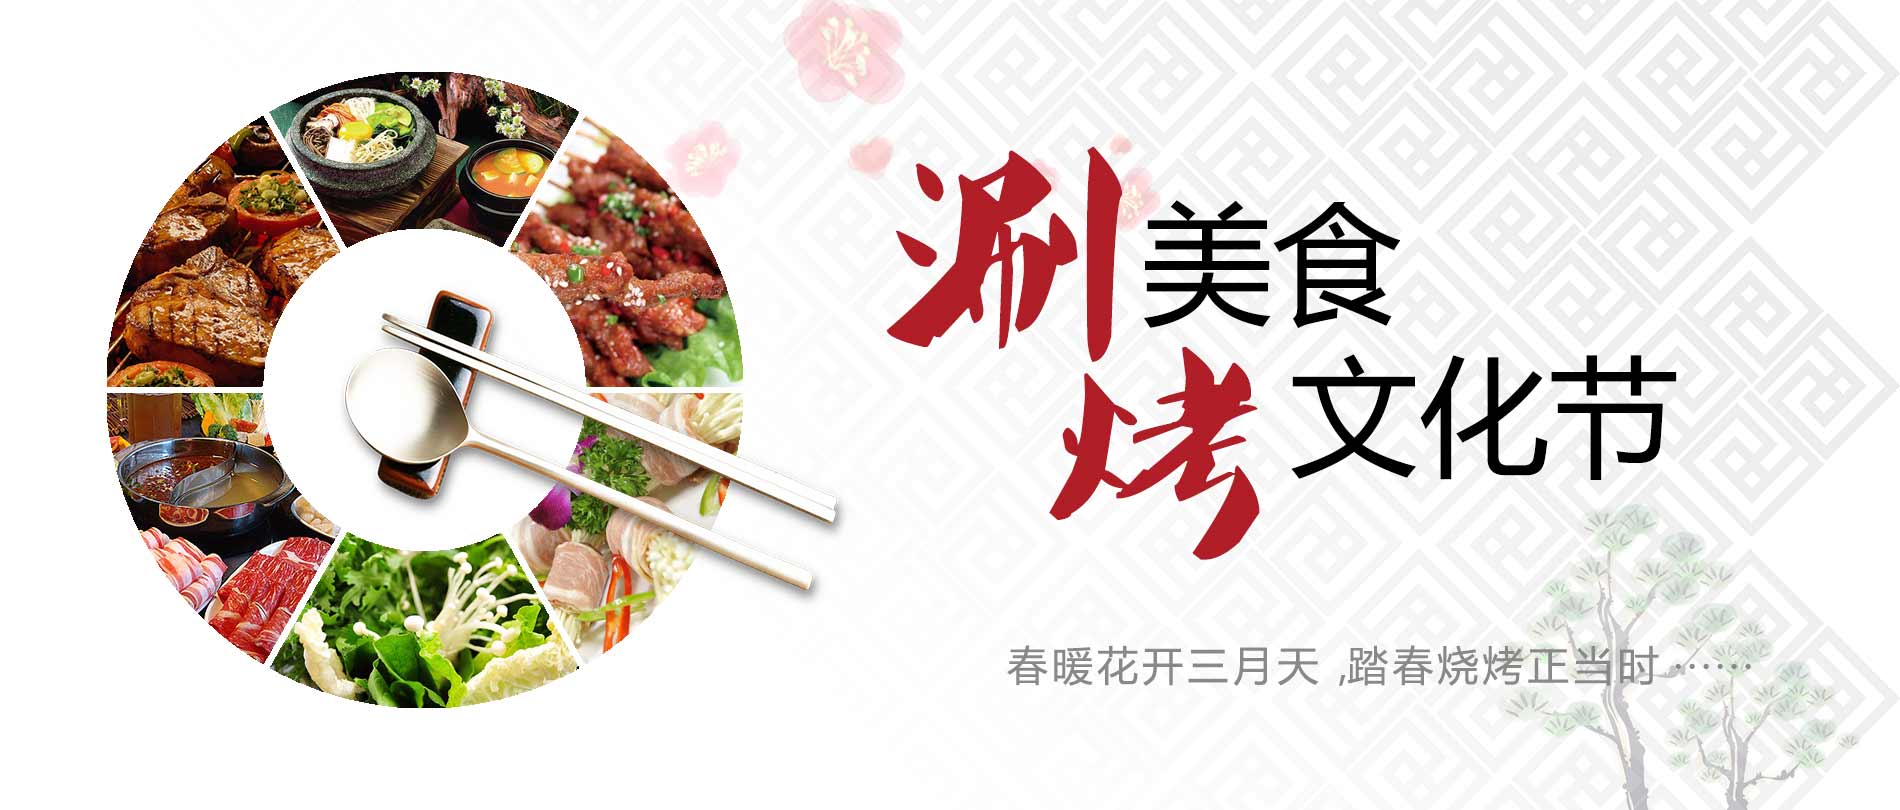 山东新东方烹饪学院第一届涮烤文化节